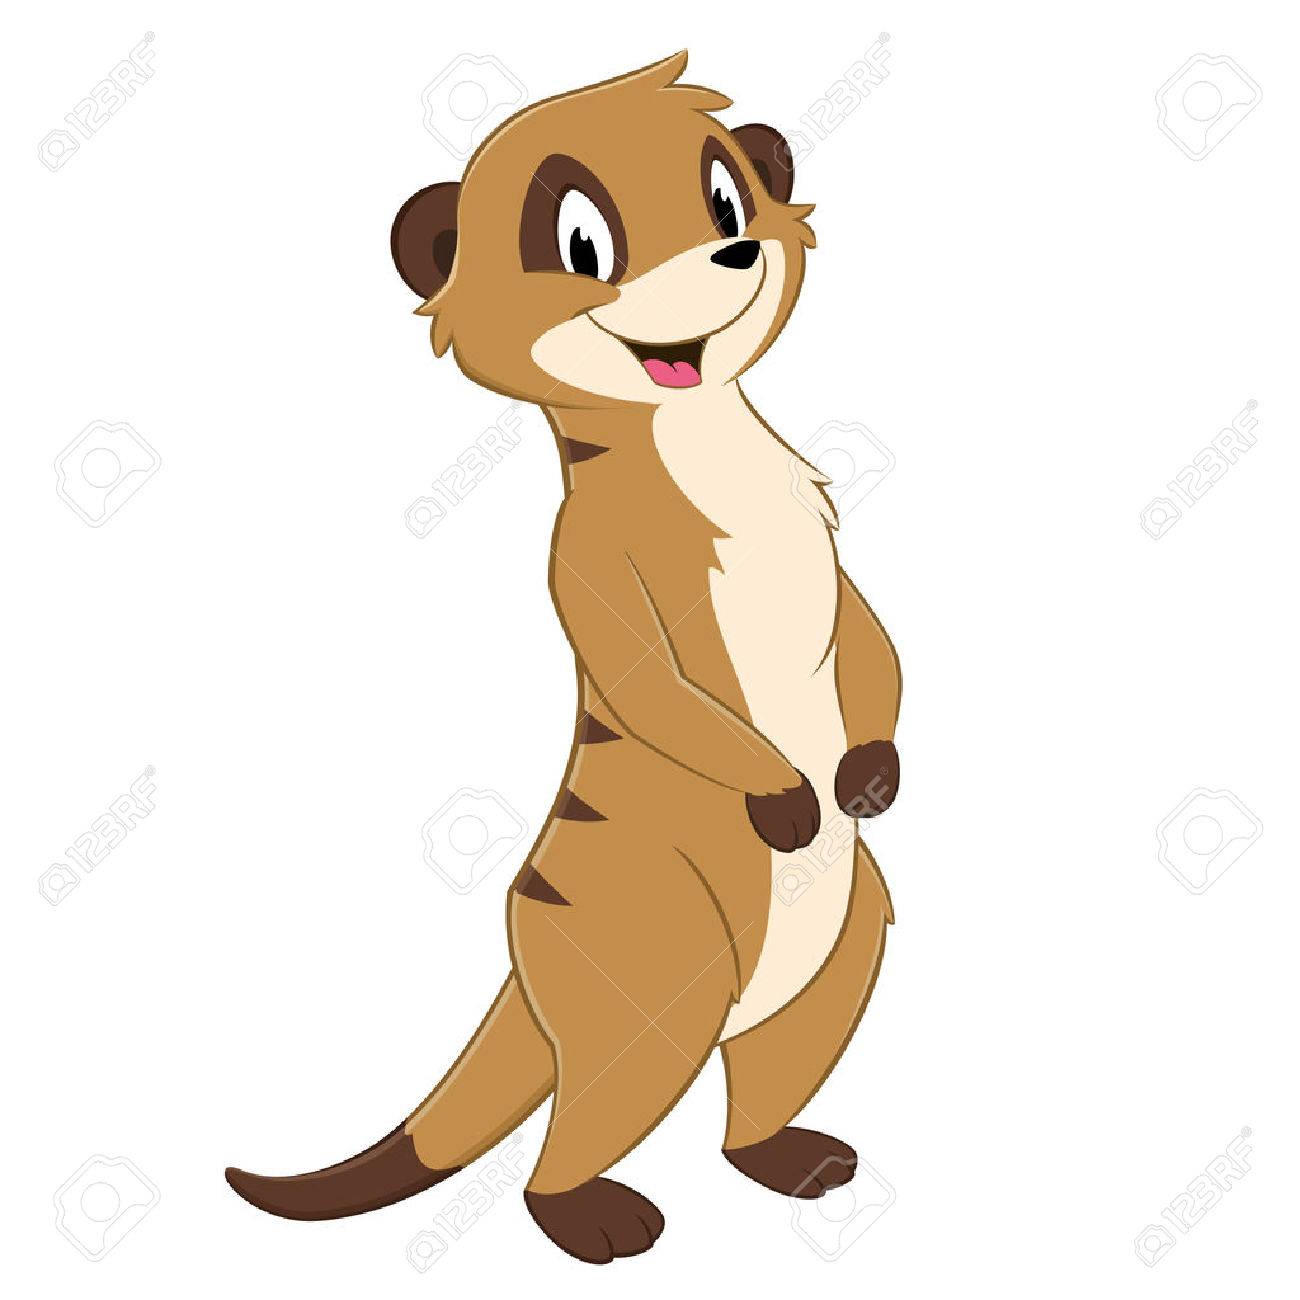 Vector illustration of a standing cartoon meerkat.